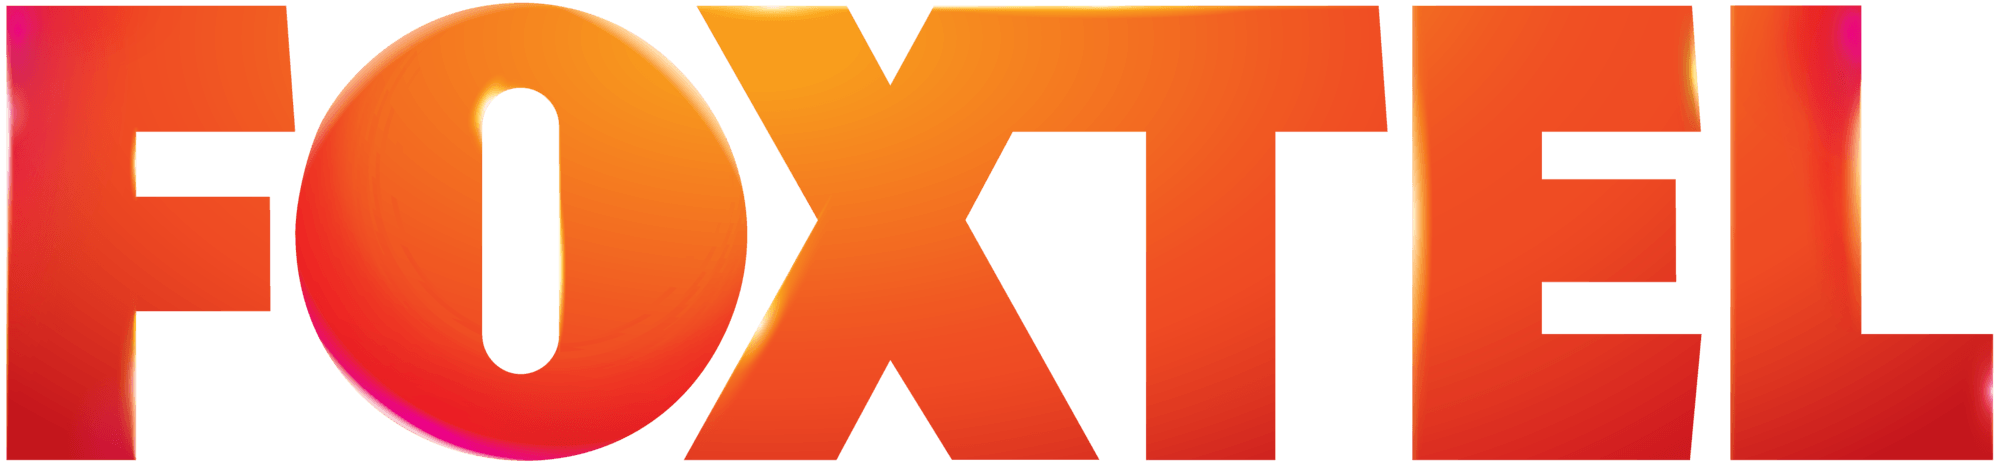 Foxtel Logo - Foxtel